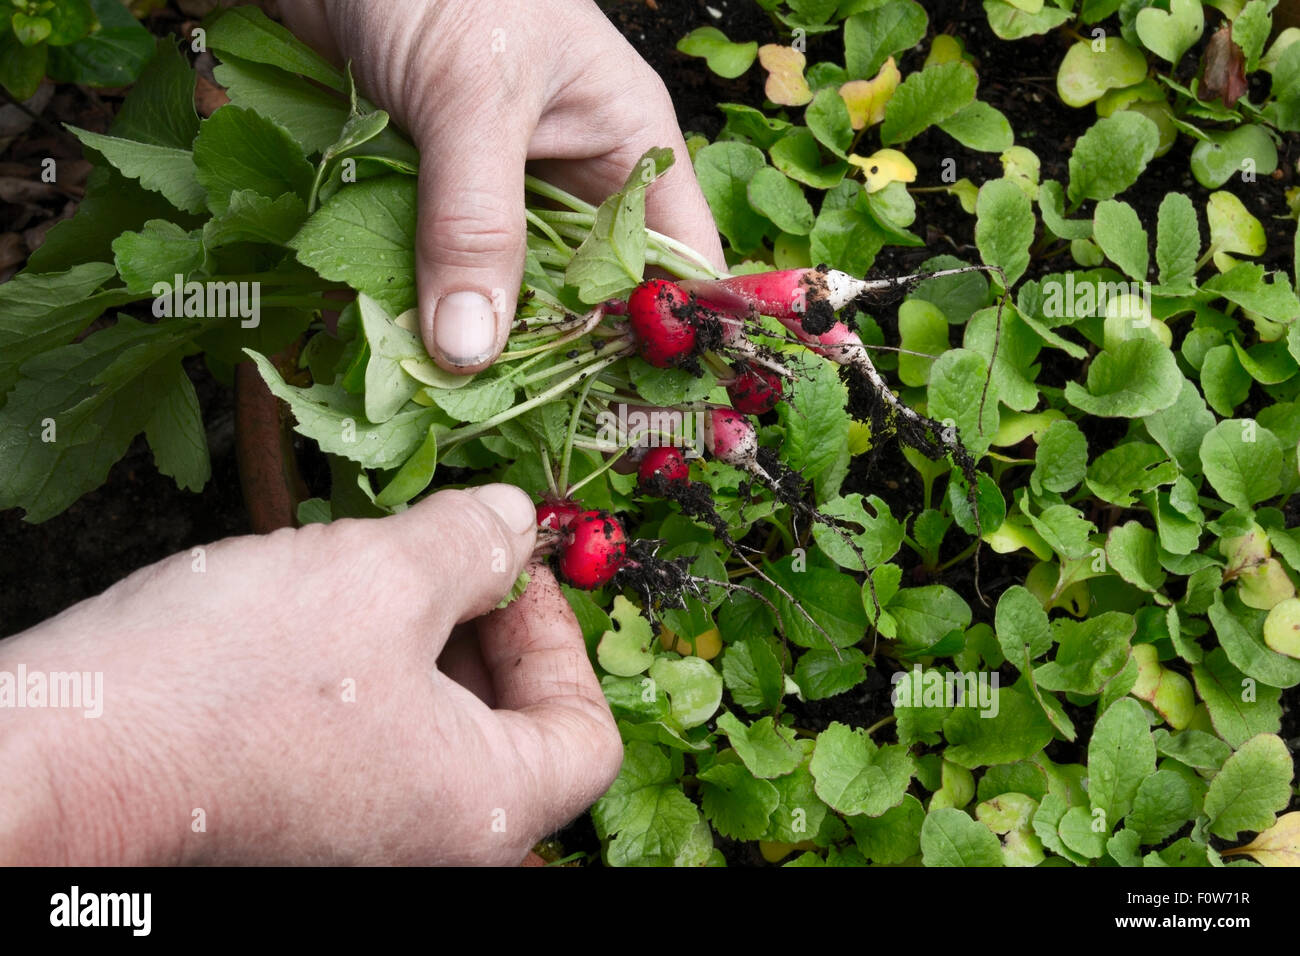 Harvesting radish Stock Photo